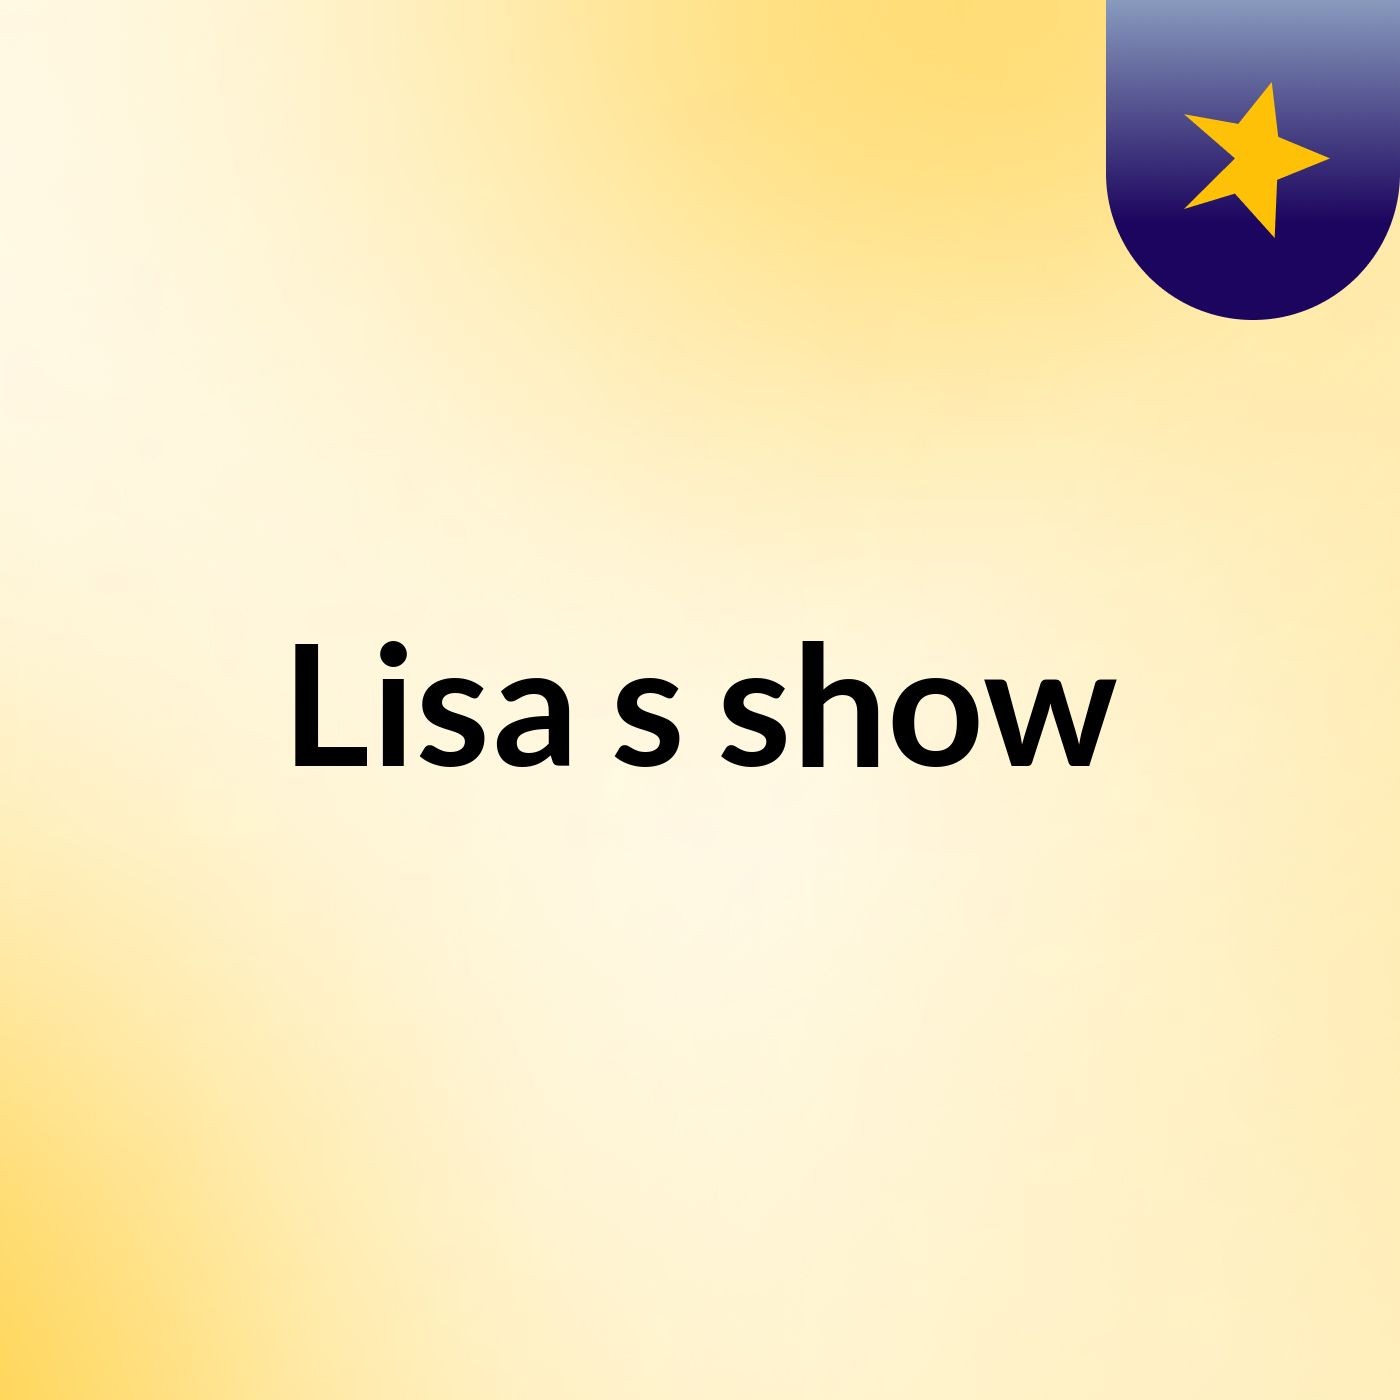 Lisa's show